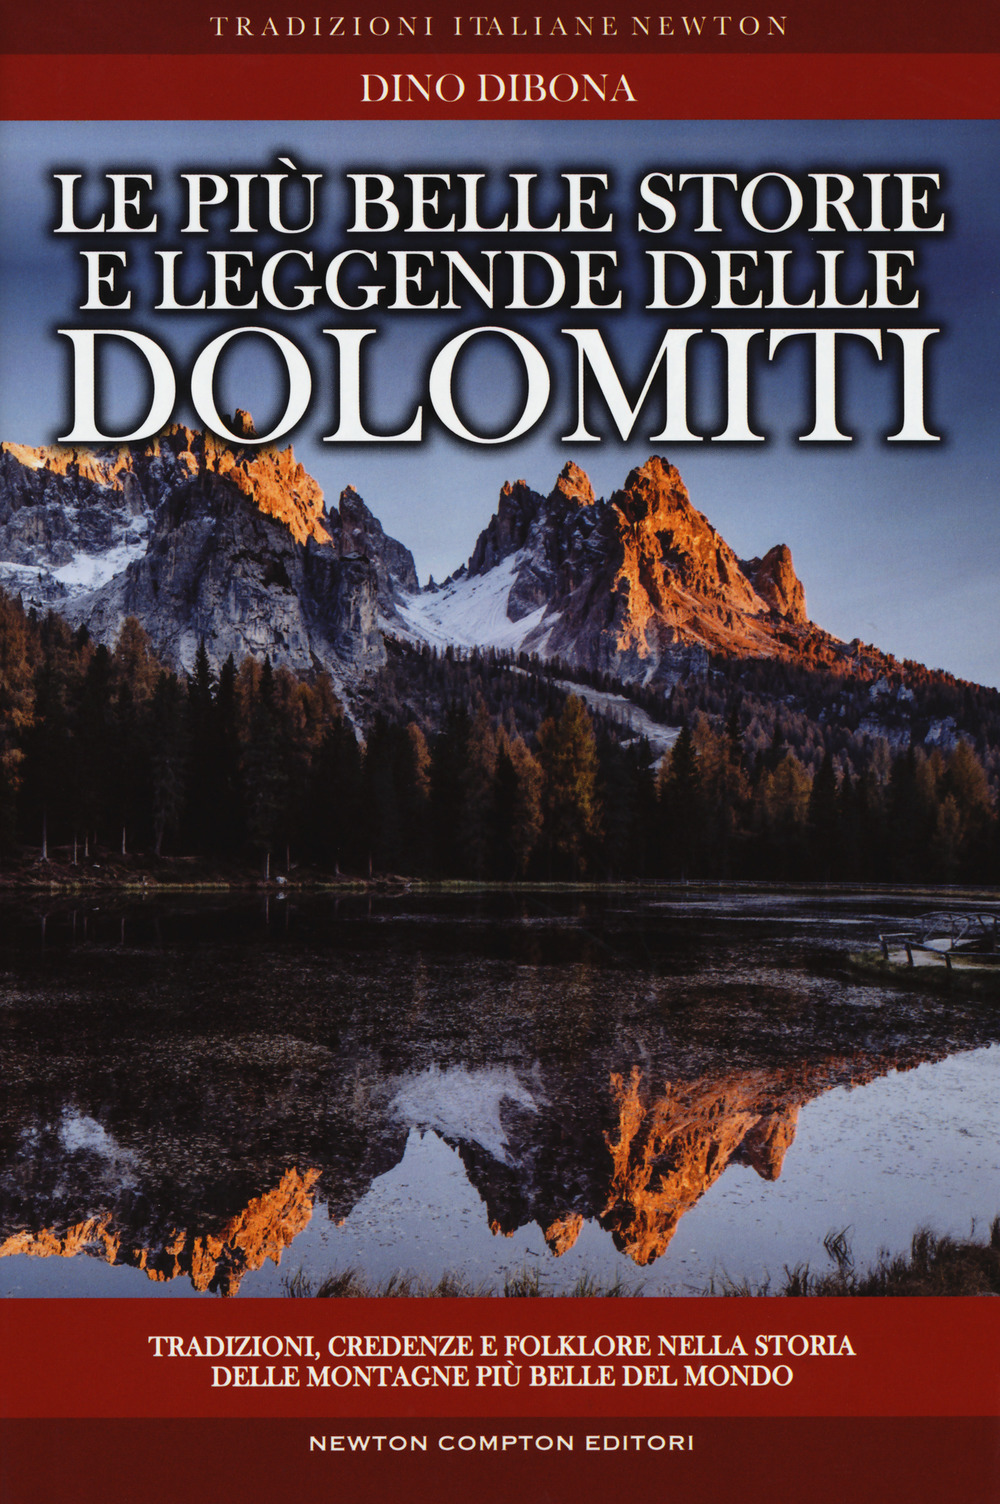 Le più belle storie e leggende delle Dolomiti. Tradizioni, credenze e folklore nella storia delle montagne più belle del mondo